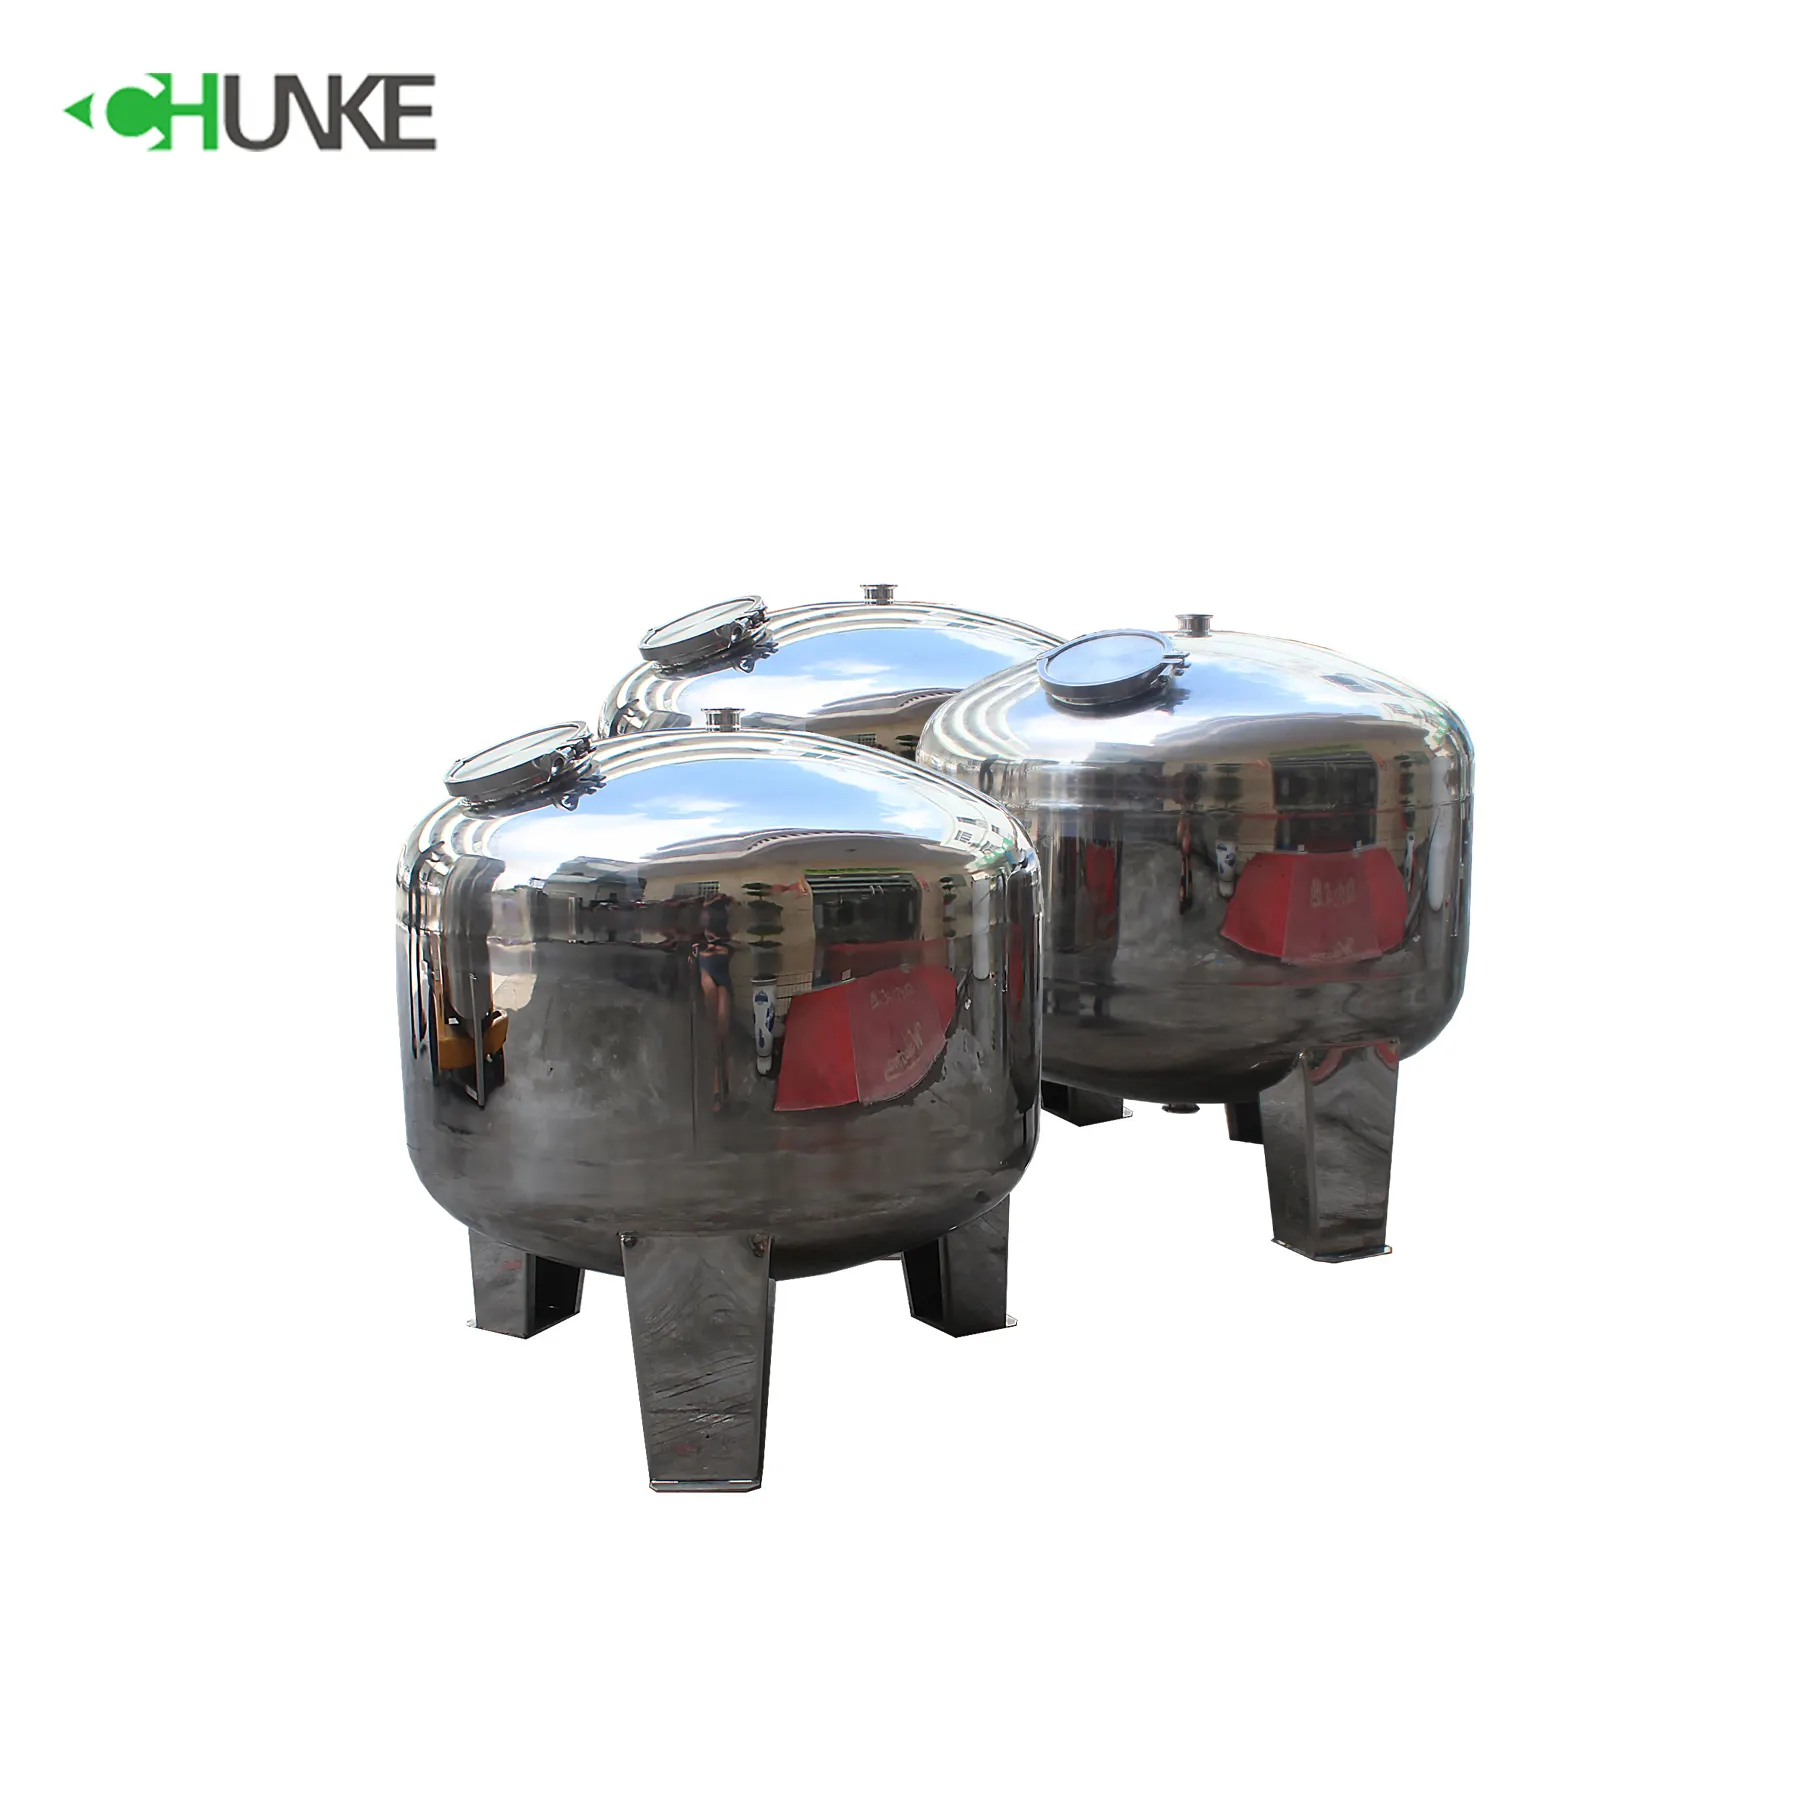 Tanque de água de aço inoxidável de 100 litros, tanque de pressão de água em aço inoxidável